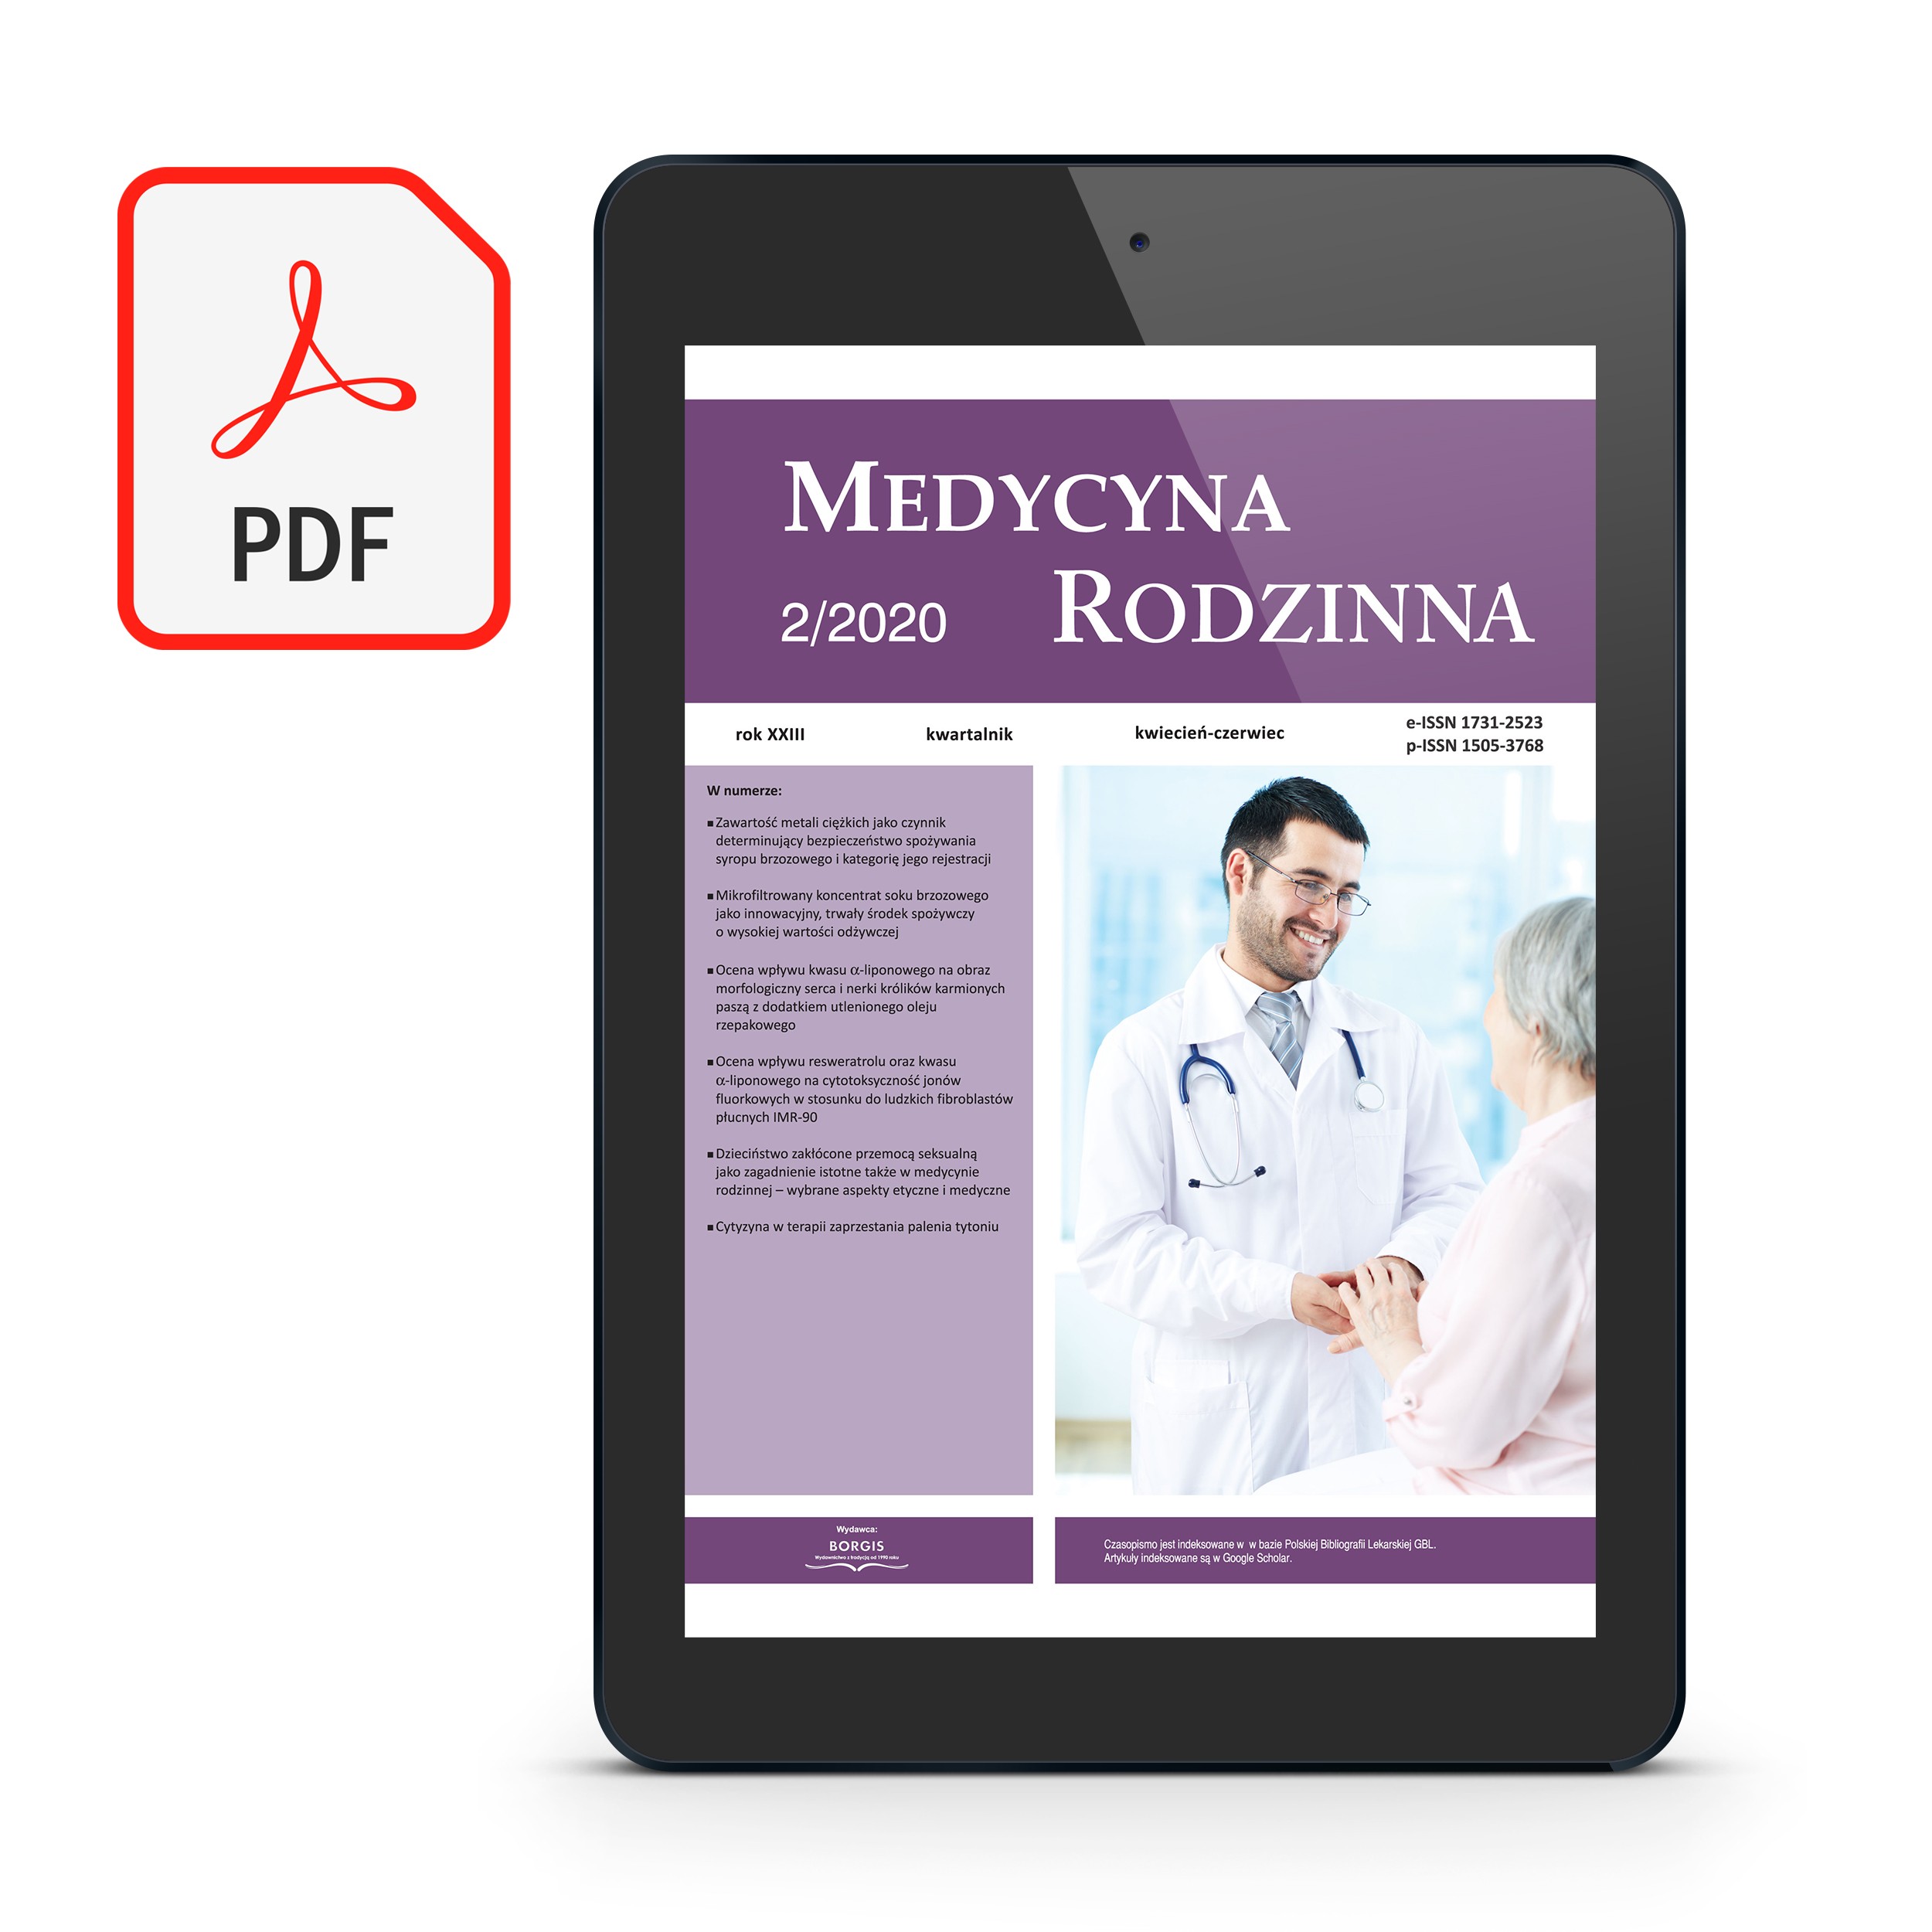 [PDF] Medycyna Rodzinna 2020/2